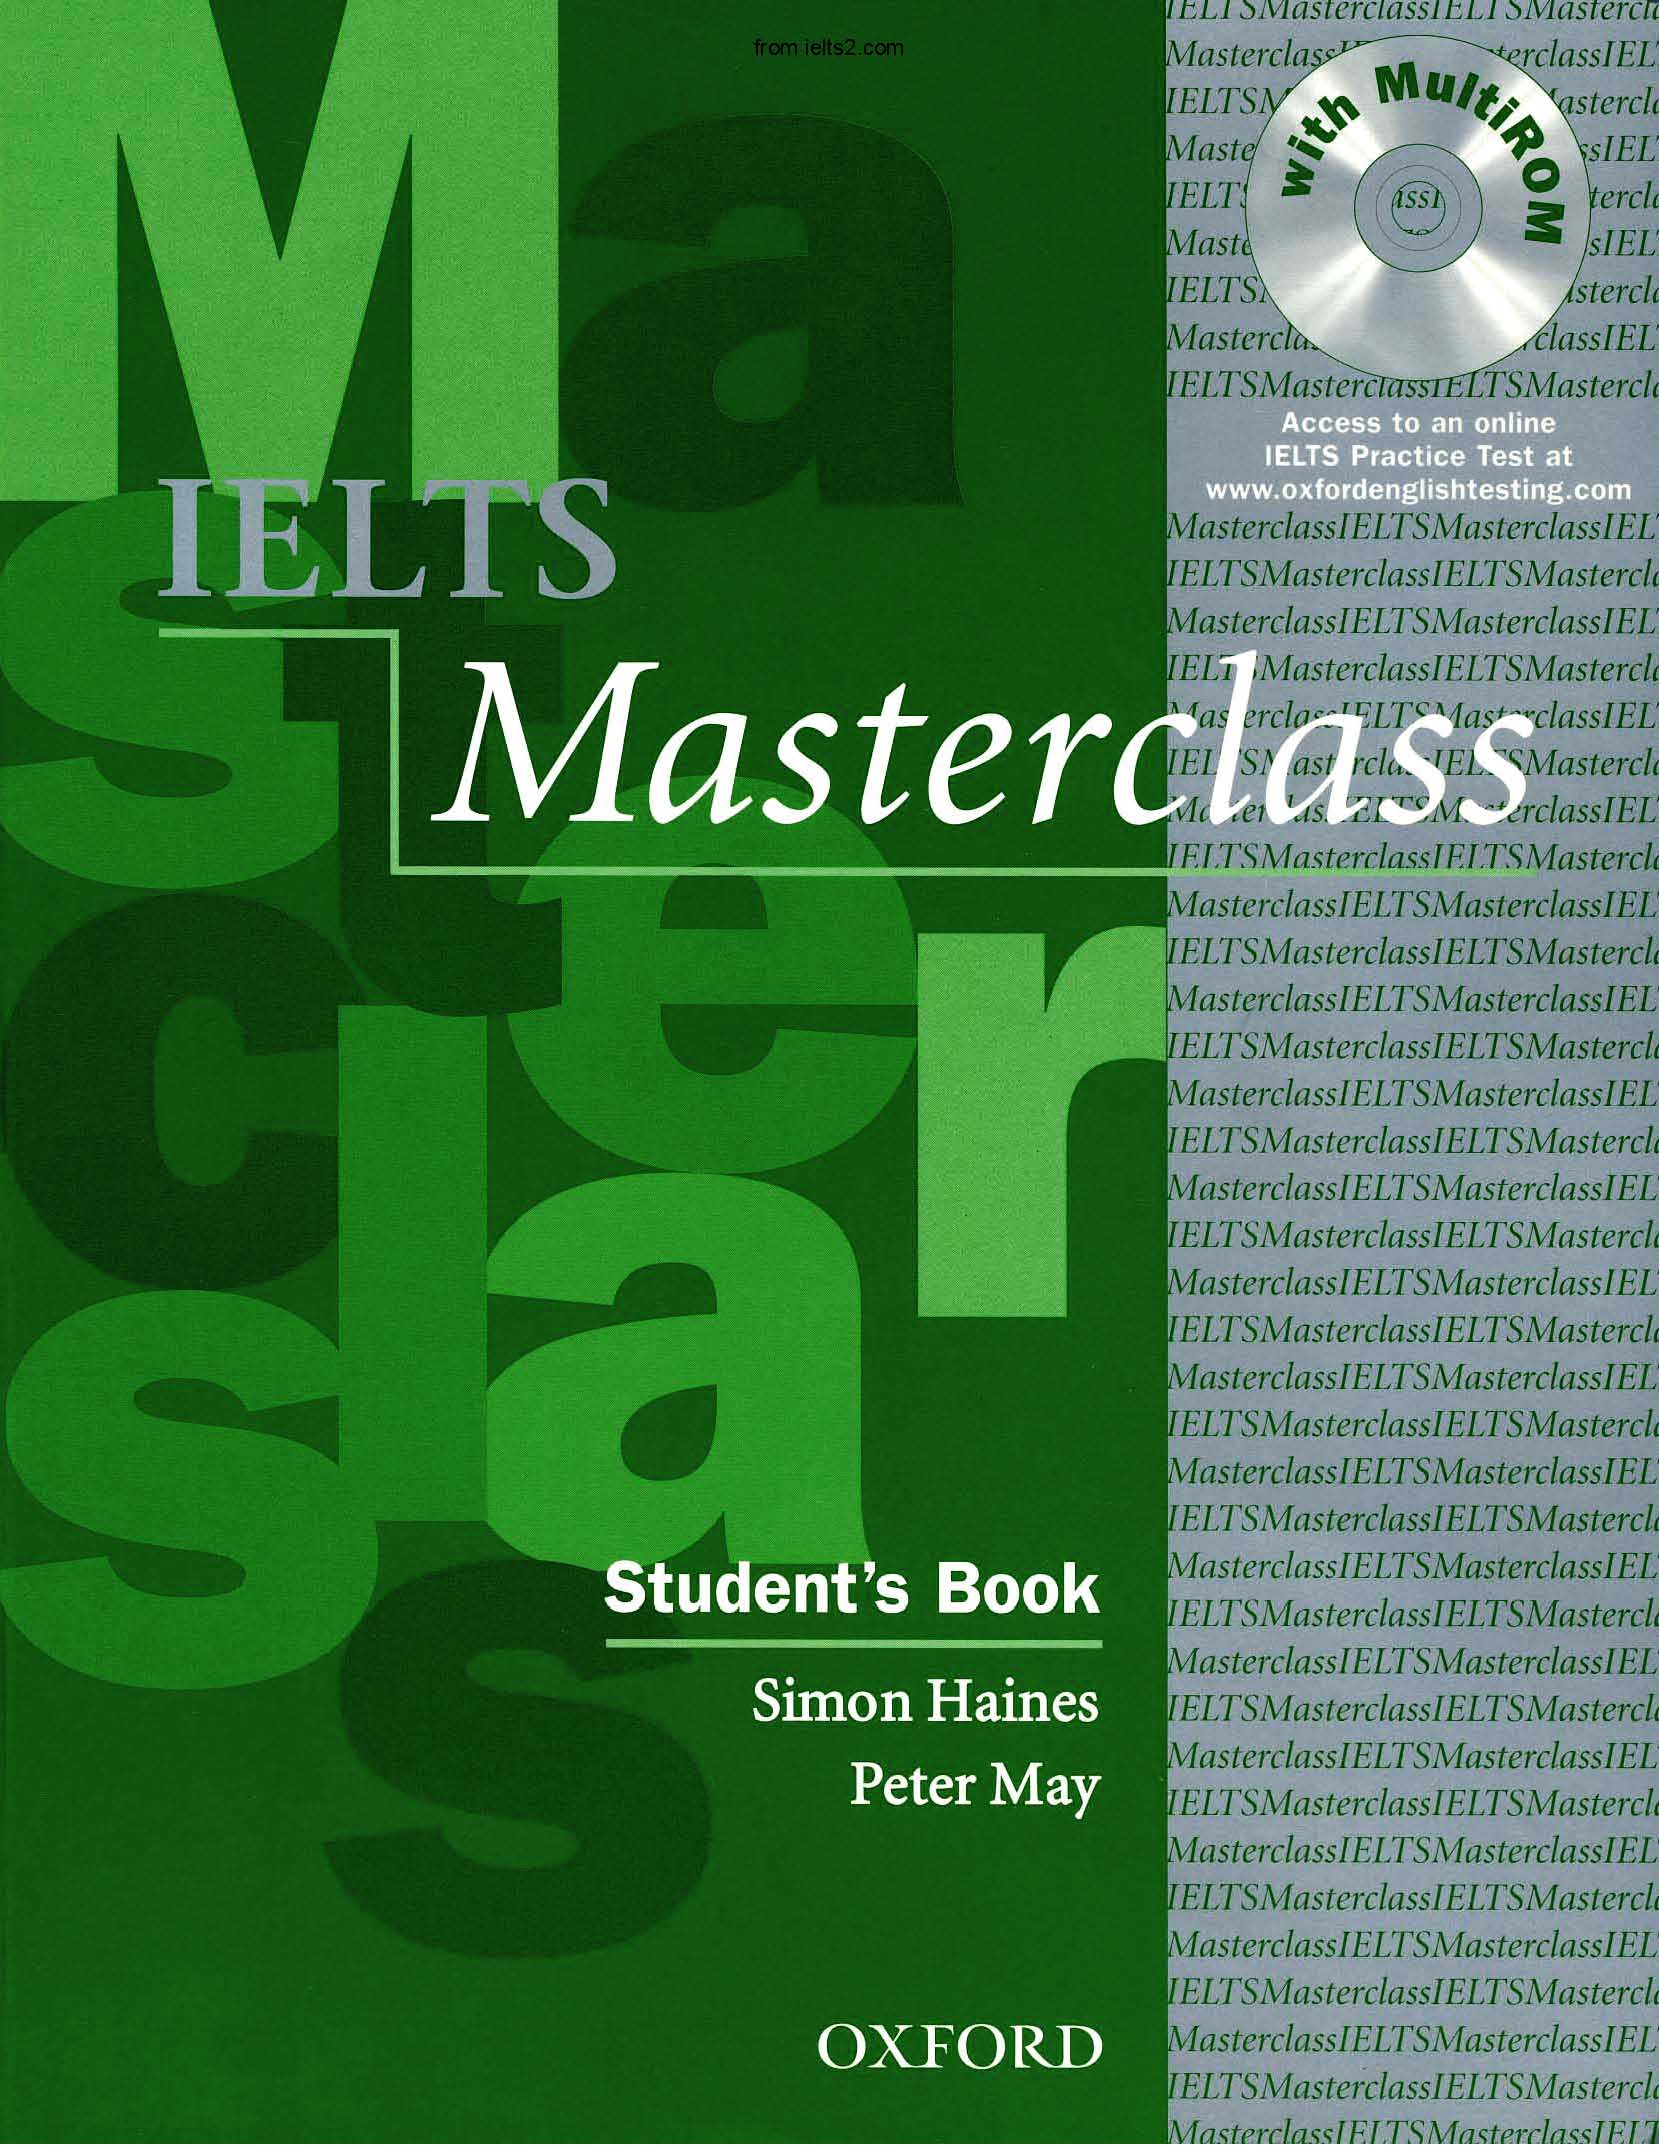 دانلود کتاب IELTS MasterClass Oxford بهمراه فایل شنیداری